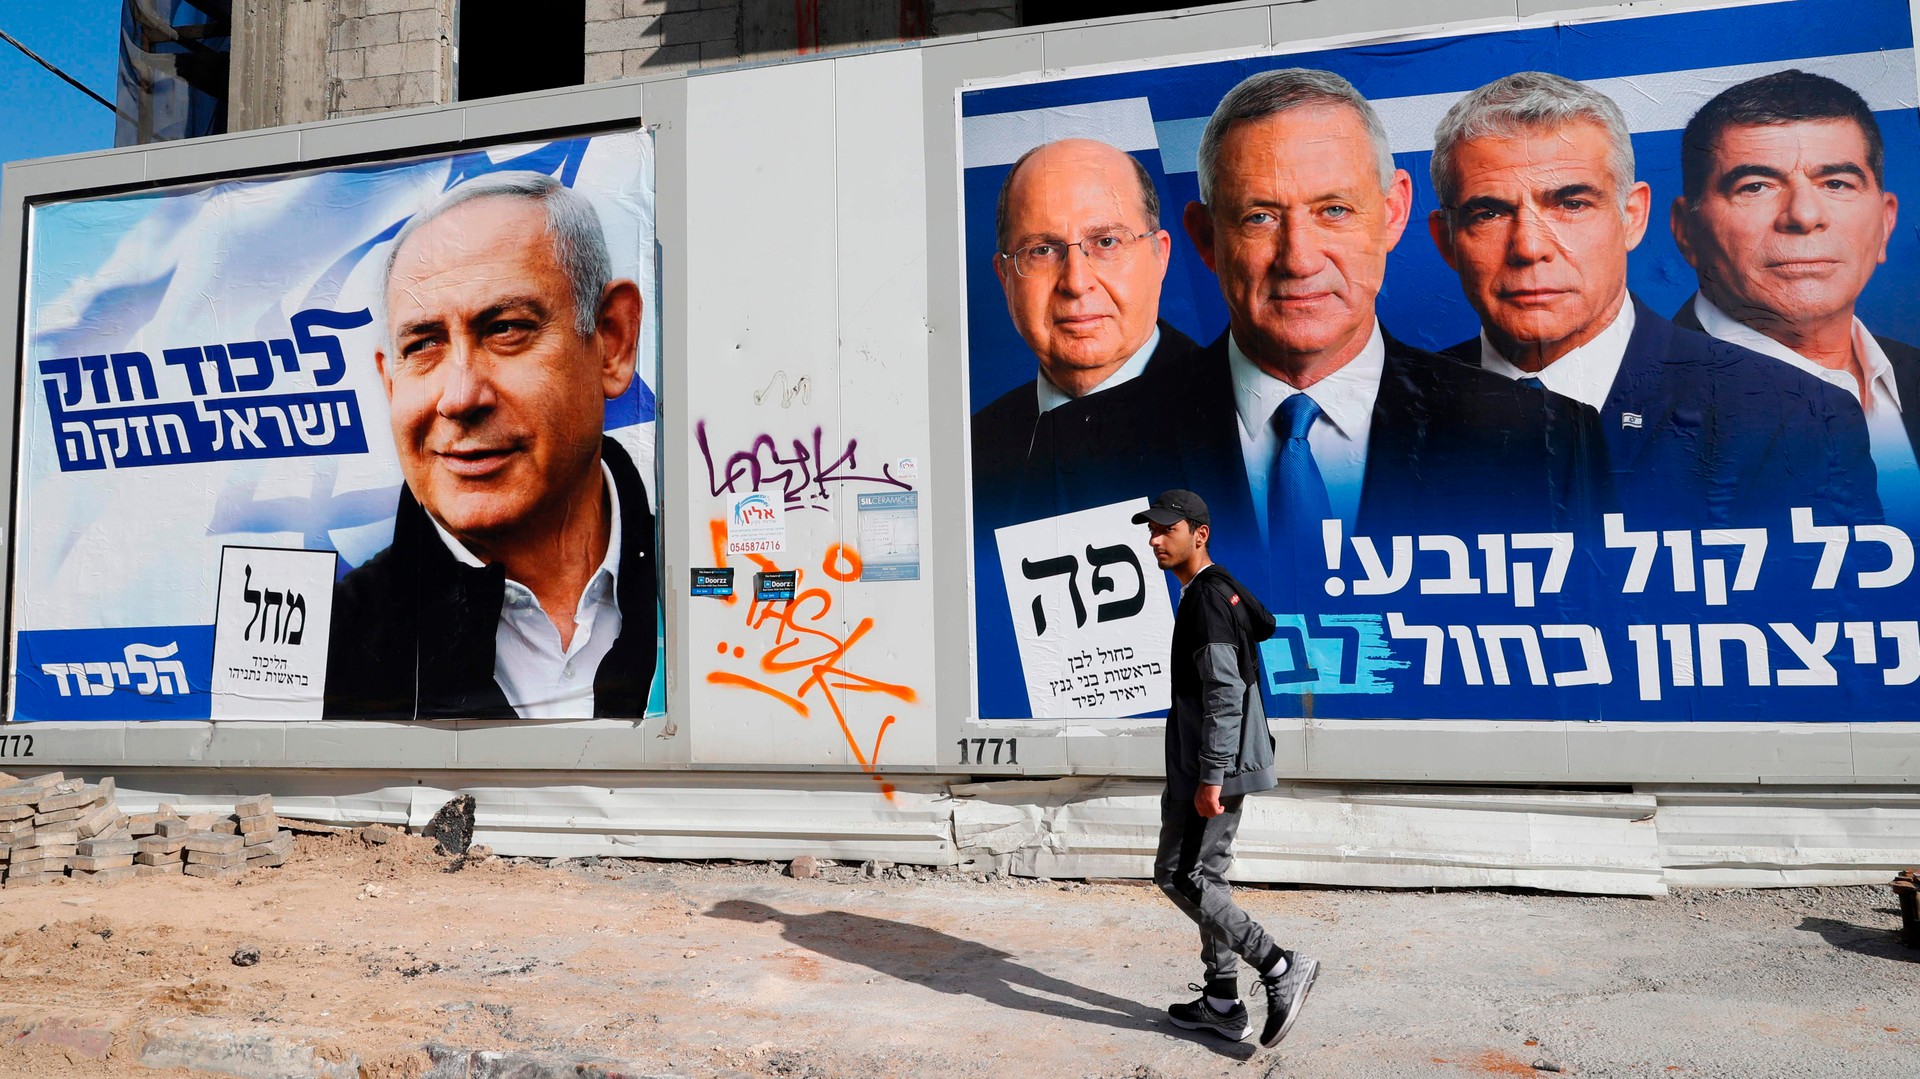 الانتخابات الإسرائيلية؛ إزاحة الستار عن زيف الديمقراطية وتأثير لوبيات الأموال والأسلحة